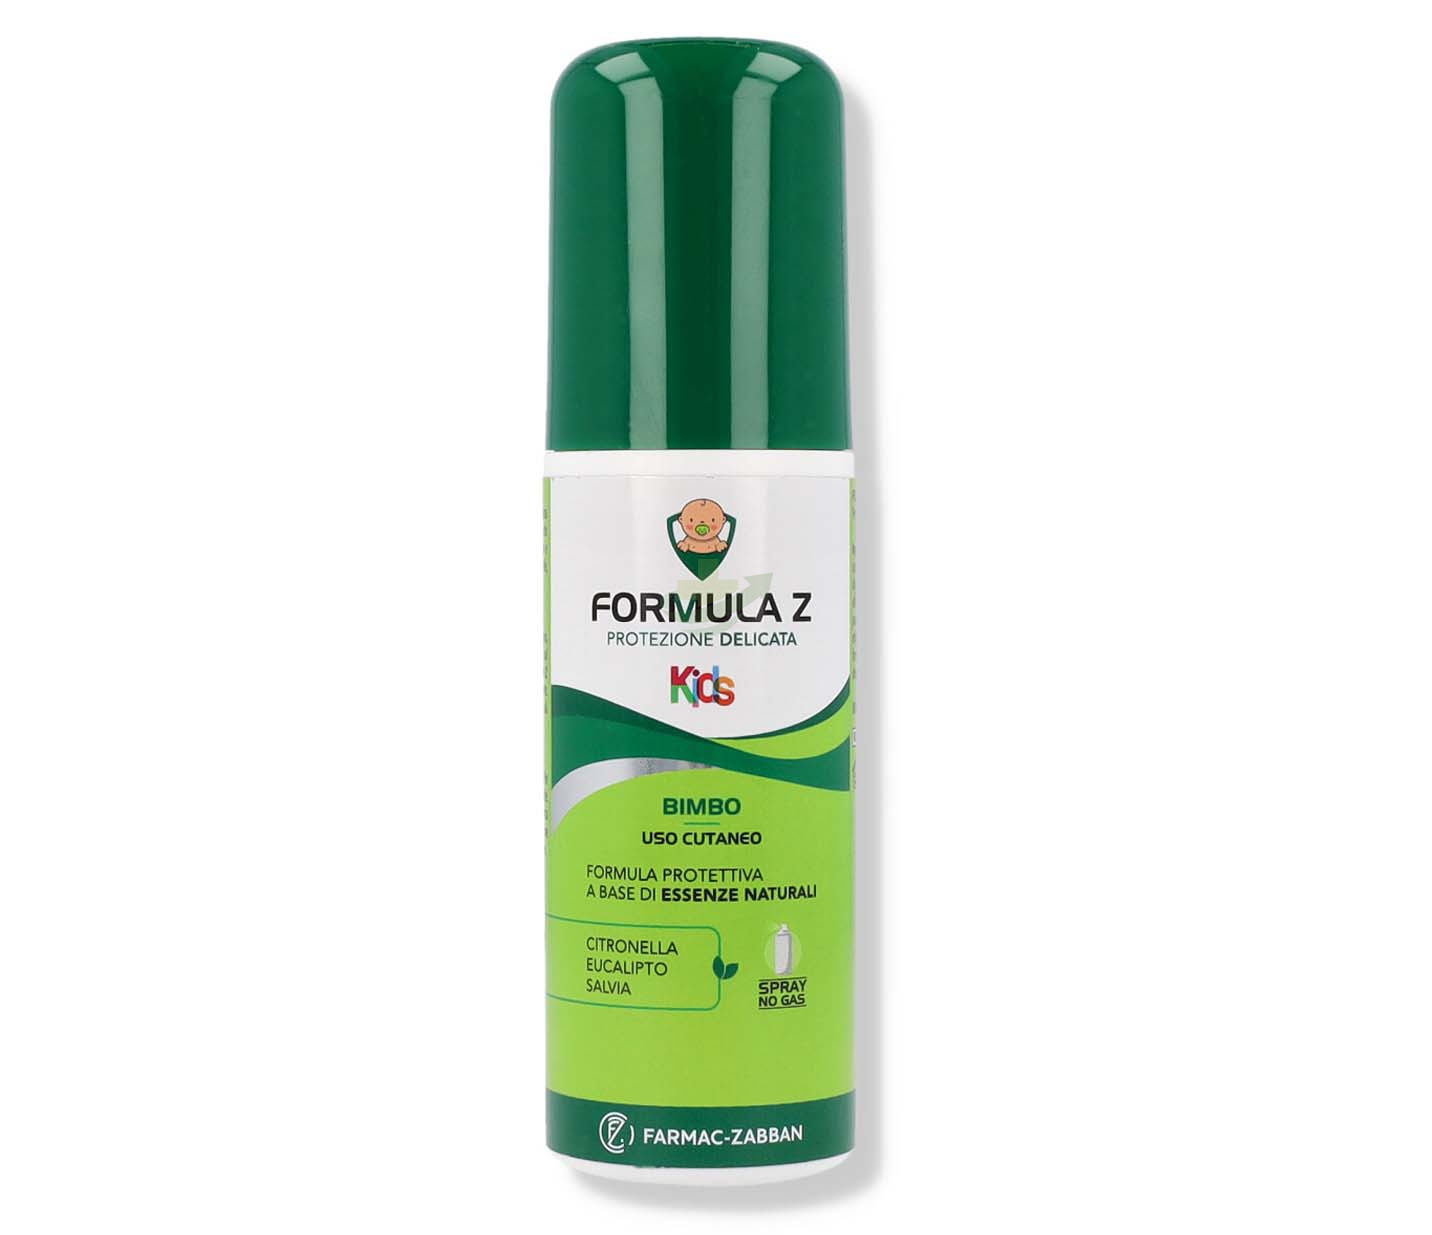 Farmac-zabban Formula Z Baby Spray No Gas 75 Ml